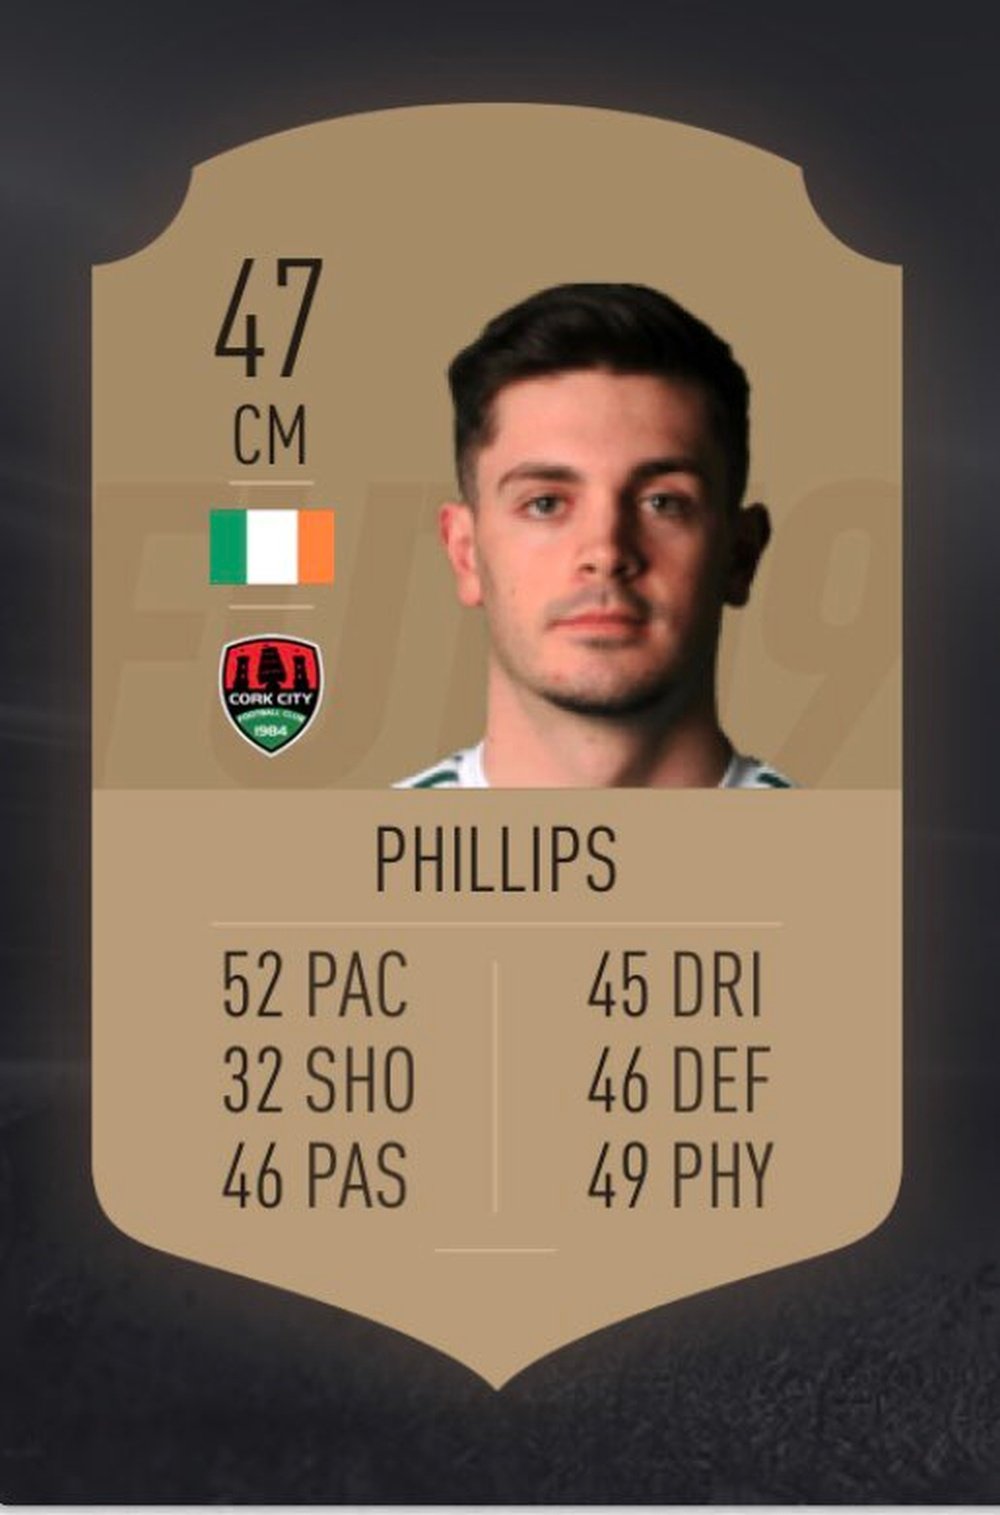 Pierce Phillips, con el peor rating en el FIFA 19. FIFA19